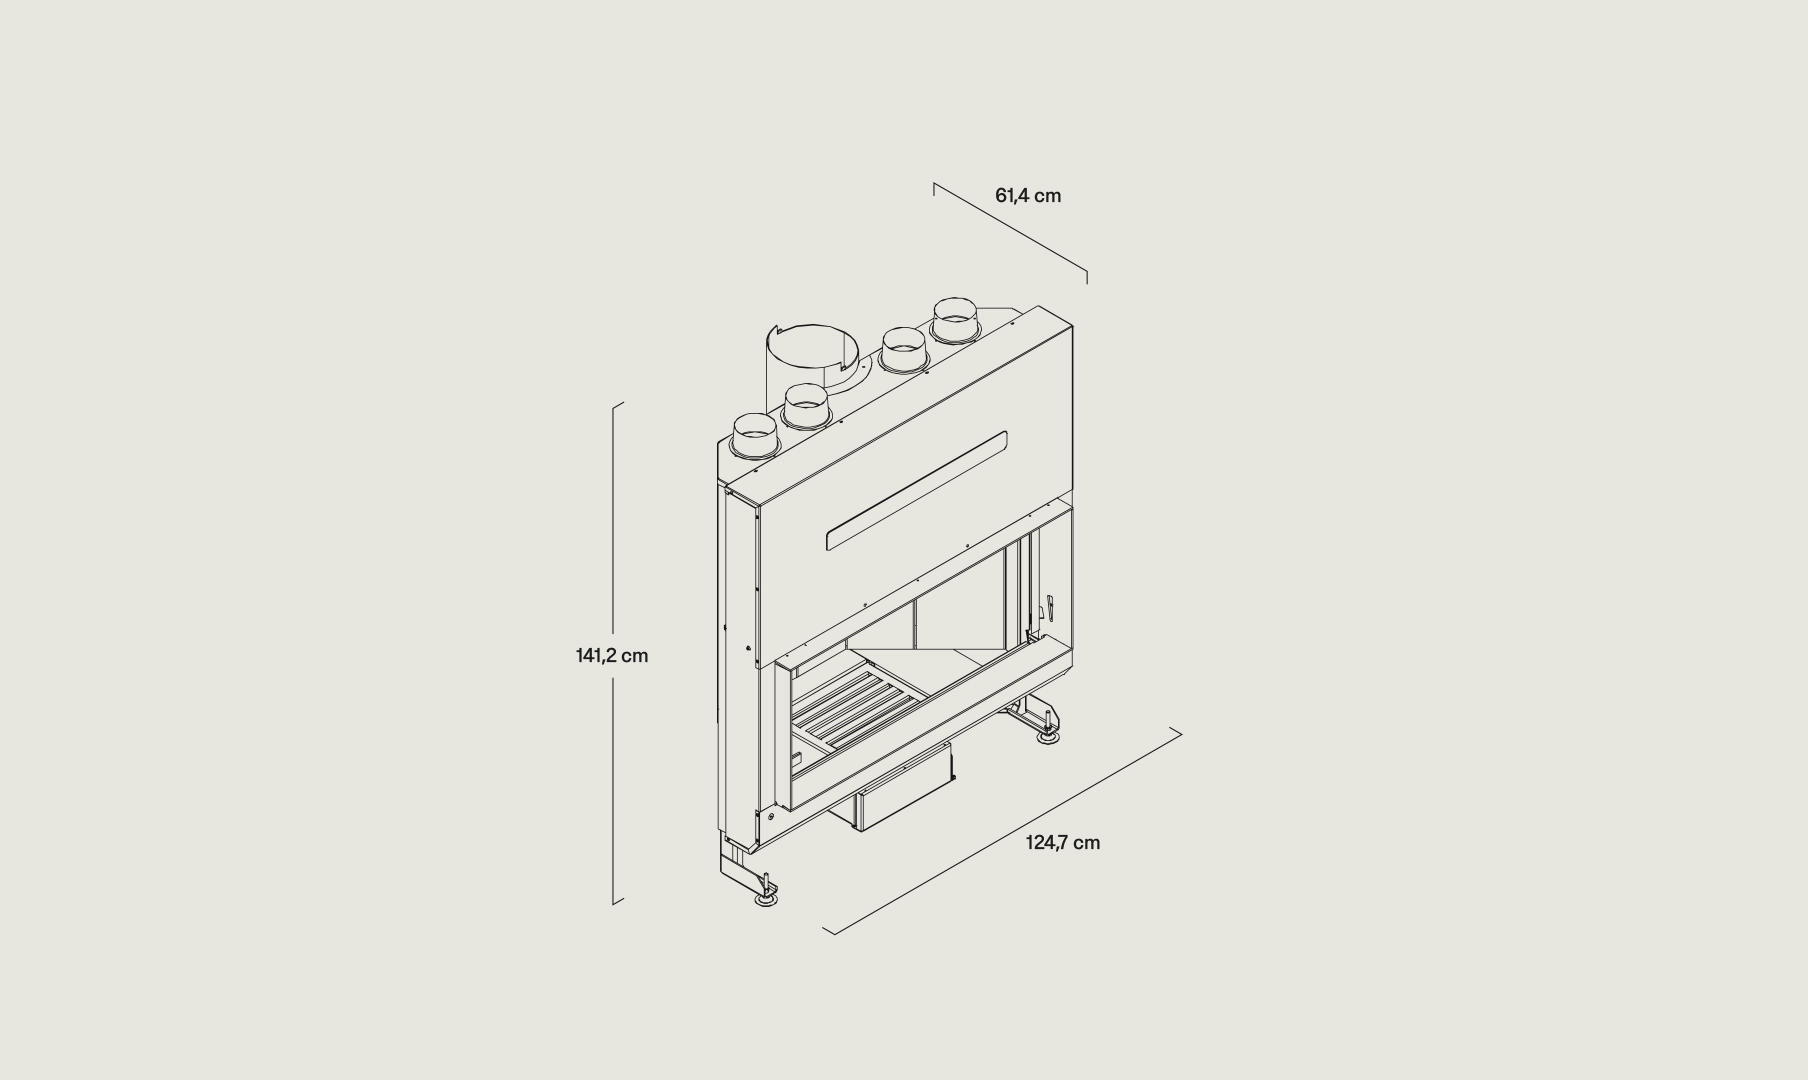 Dibujo vectorial Hogar G505 Rinconera de Rocal con sus medidas 